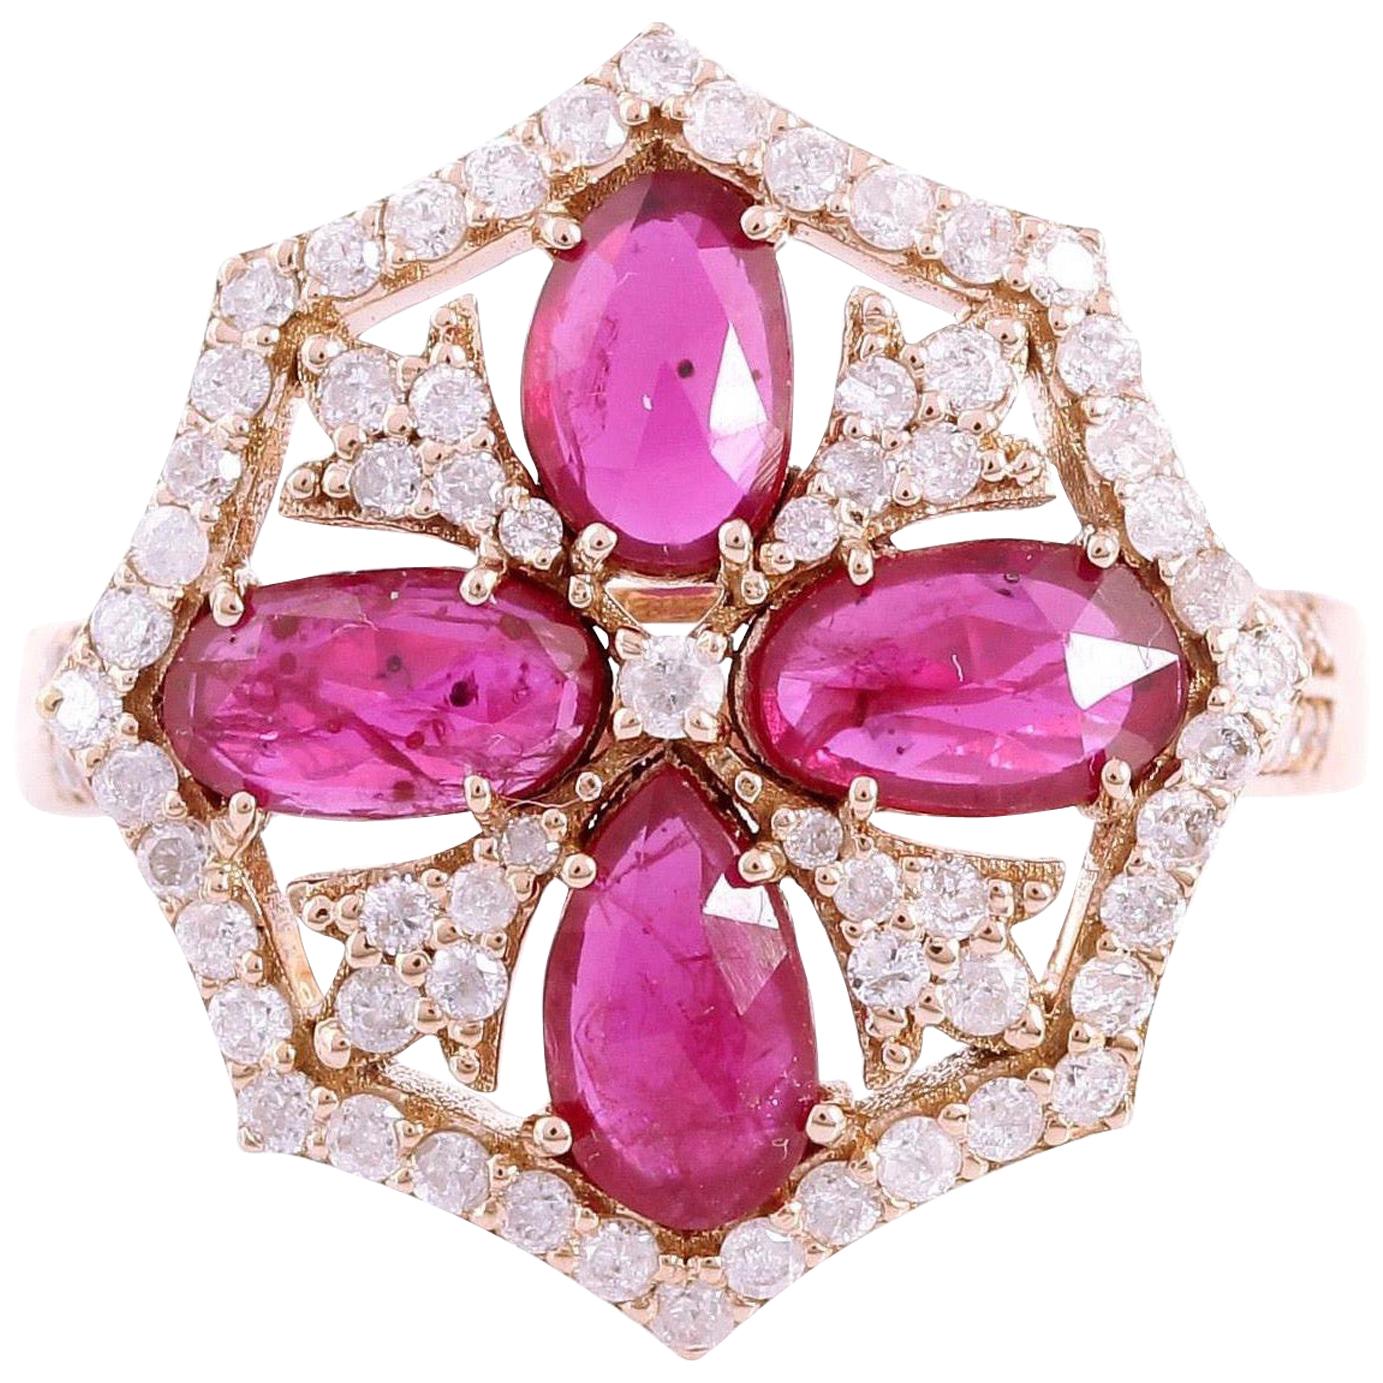 1.5 Carat Ruby Diamond 18 Karat Gold Ring